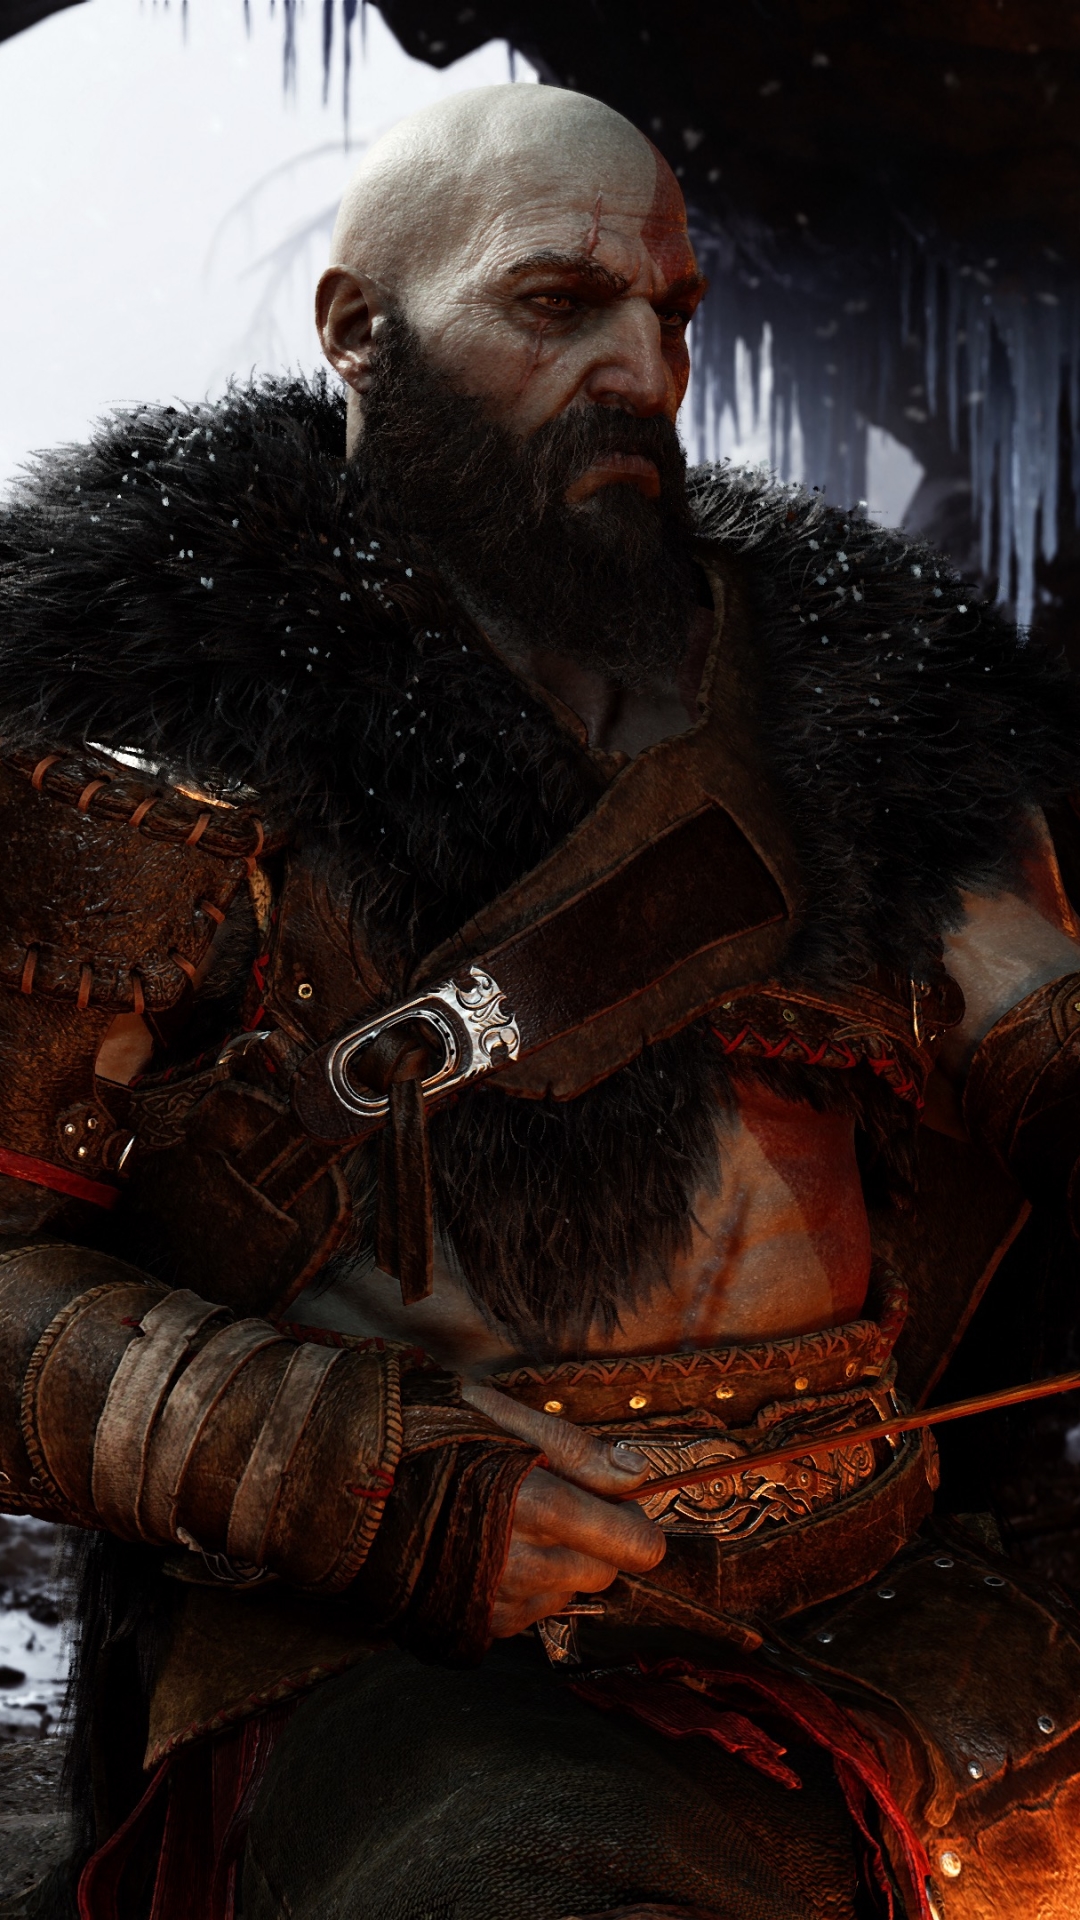 160+ God of War: Ragnarök HD Wallpapers and Backgrounds